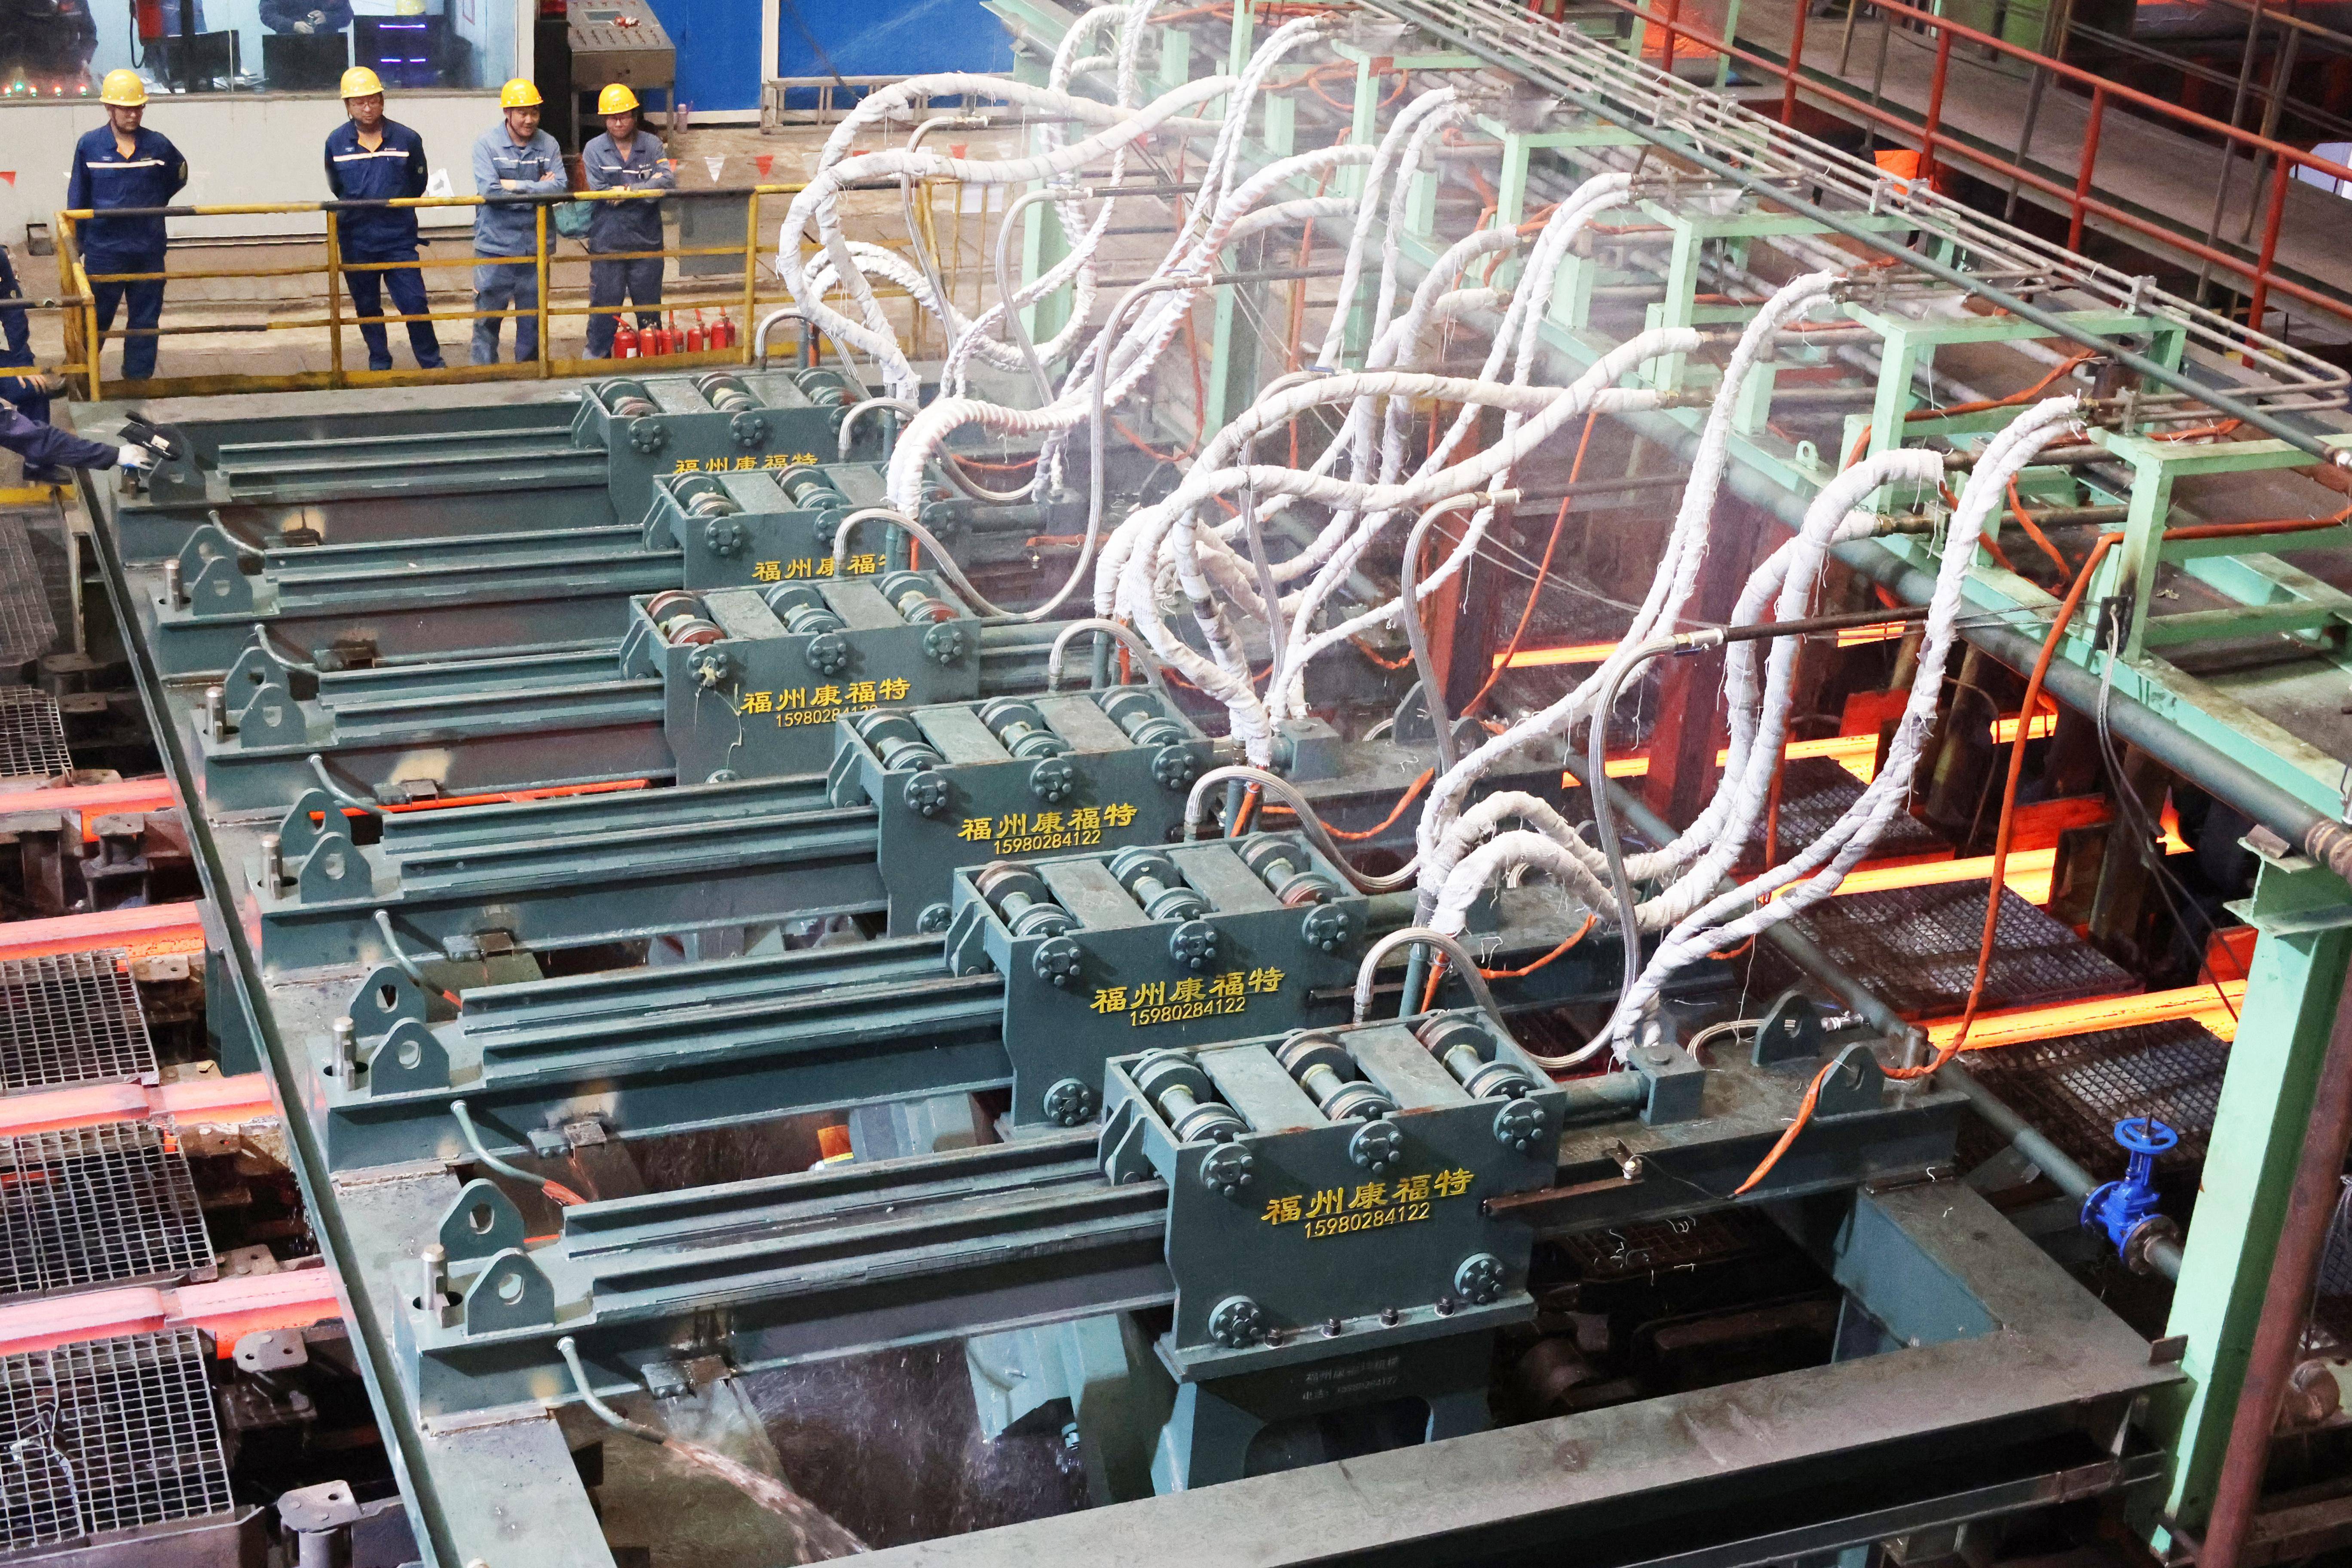 重庆钢铁6号连铸机液压剪改造项目热负荷试车成功